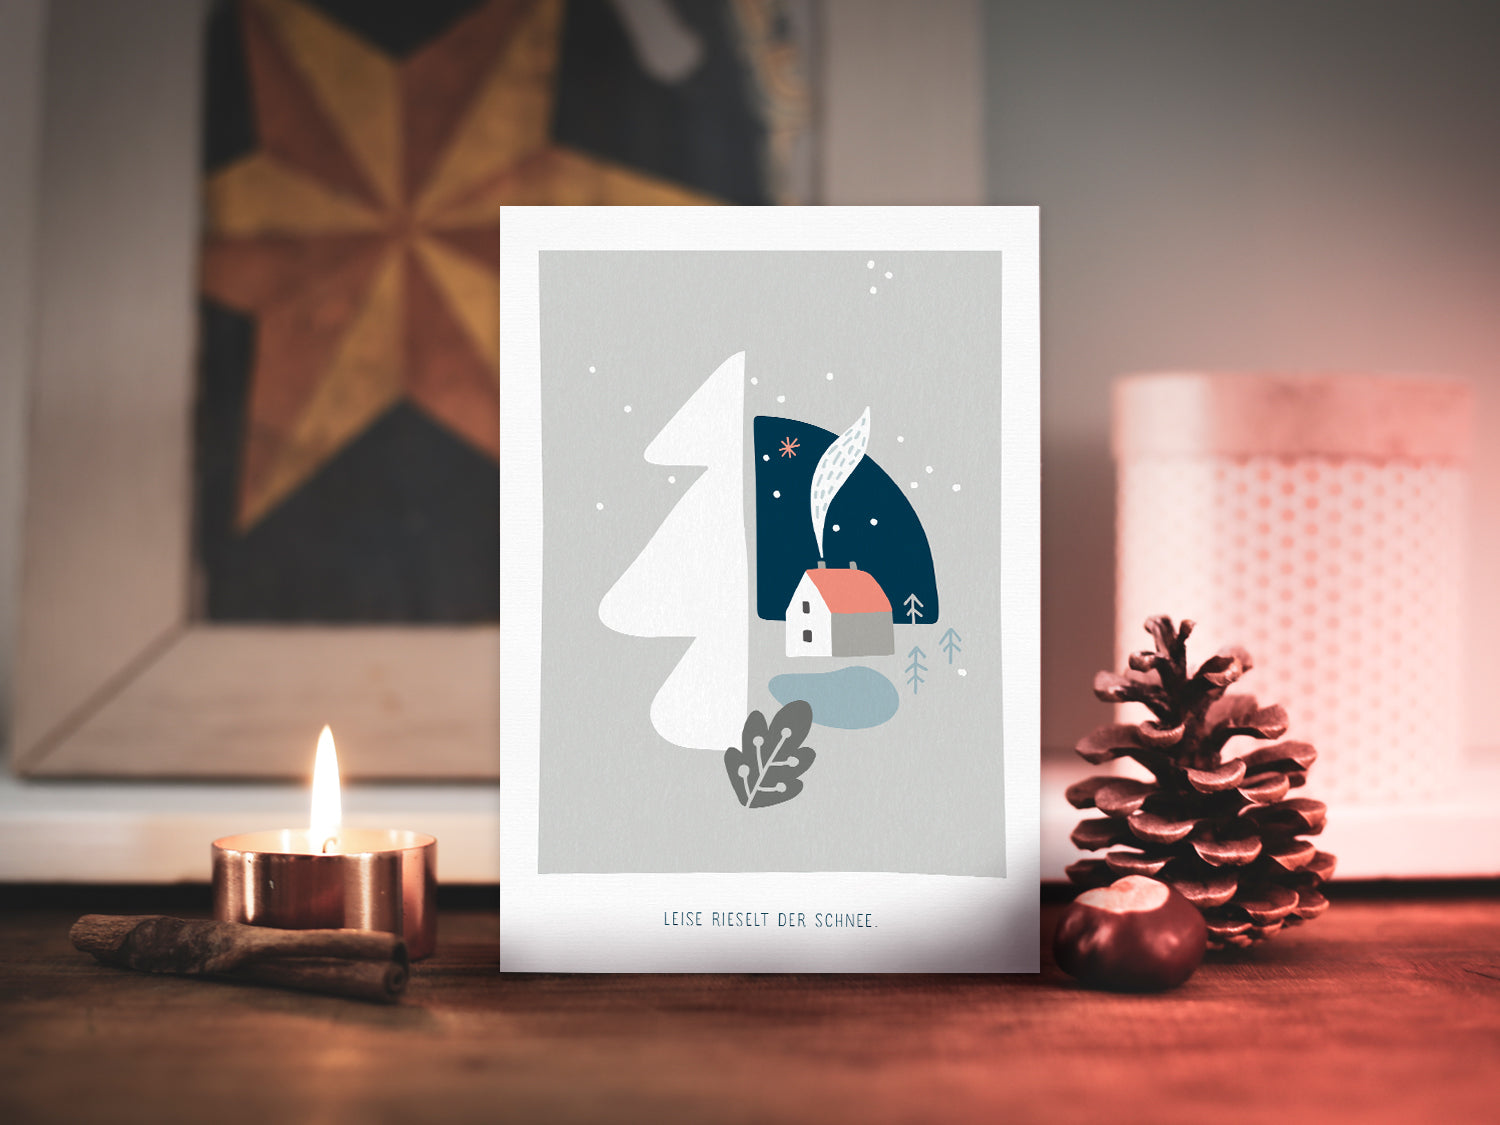 Weihnachtskarte im Scandi Nordic Stil als kleiner Postkartengruß, illustriert mit einer ruhigen, verschneiten Winterlandschaft und dem Spruch »Leise rieselt der Schnee«, in sanften Pastellfarben.  Postkarte: DIN A6 Druck: 4/1-farbig, Offsetdruck   Karton: Offsetkarton, 400g/qm (natürliche Haptik)   Briefumschlag: weiß, nassklebend